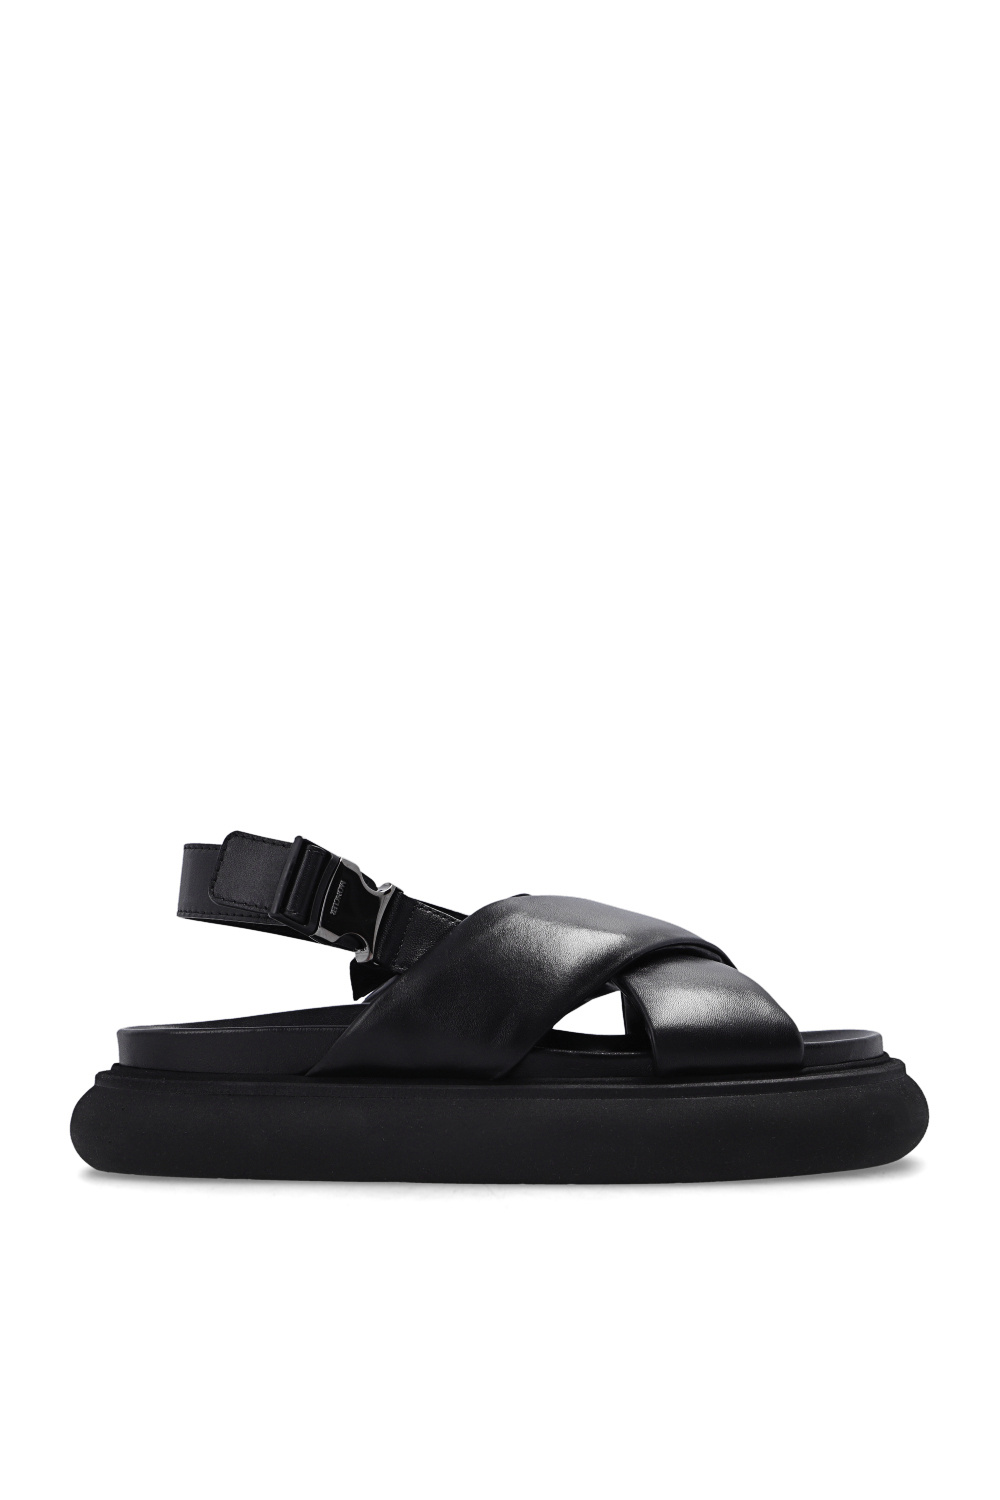 Moncler ‘Solarisse’ leather sandals